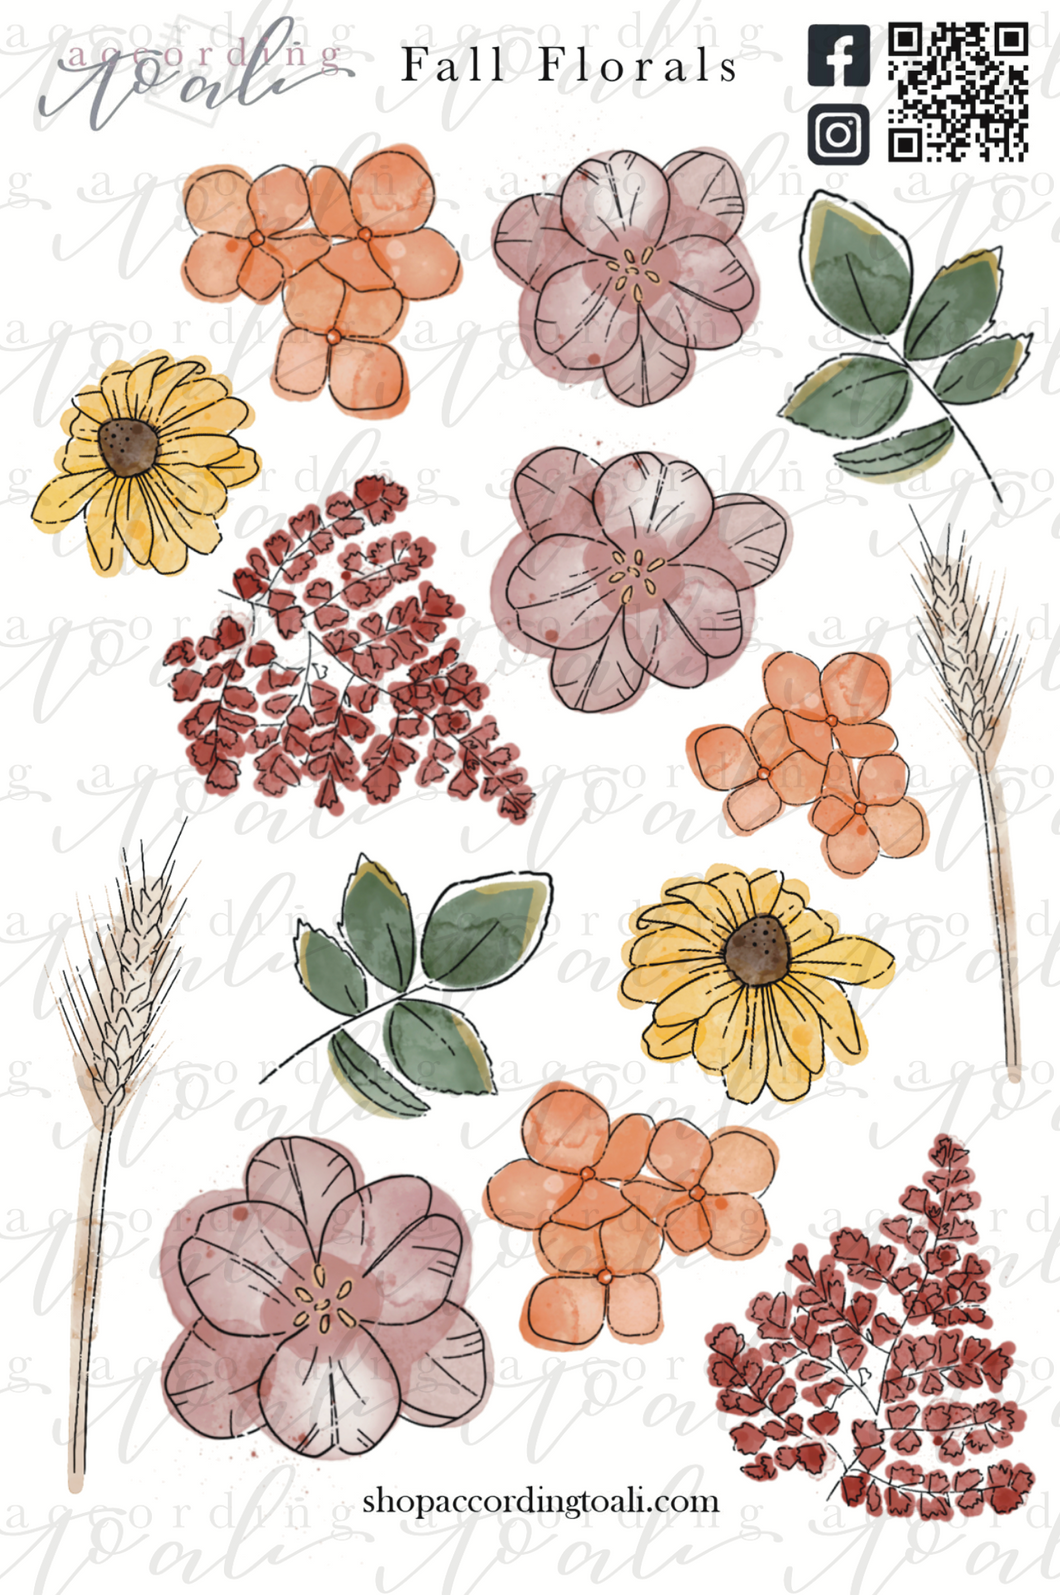 Fall Florals Sticker Sheet